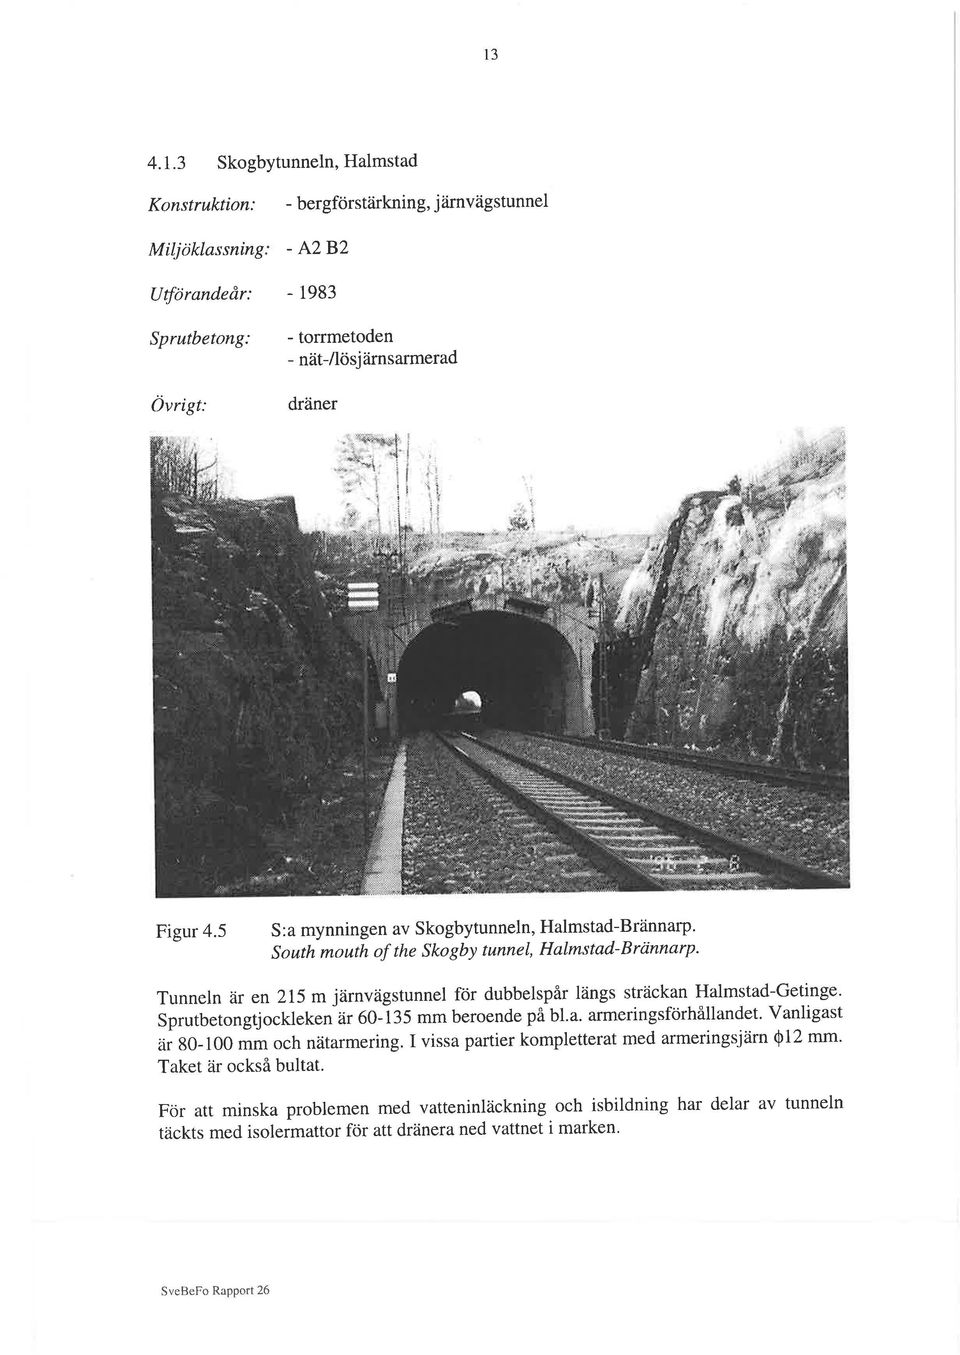 South mouth of the Skogby tunnel, Halmstad-Brcinnarp' Tunneln ar en 2I5 m jârnvägstunnel för dubbelspår längs sträckan Halmstad-Getinge.